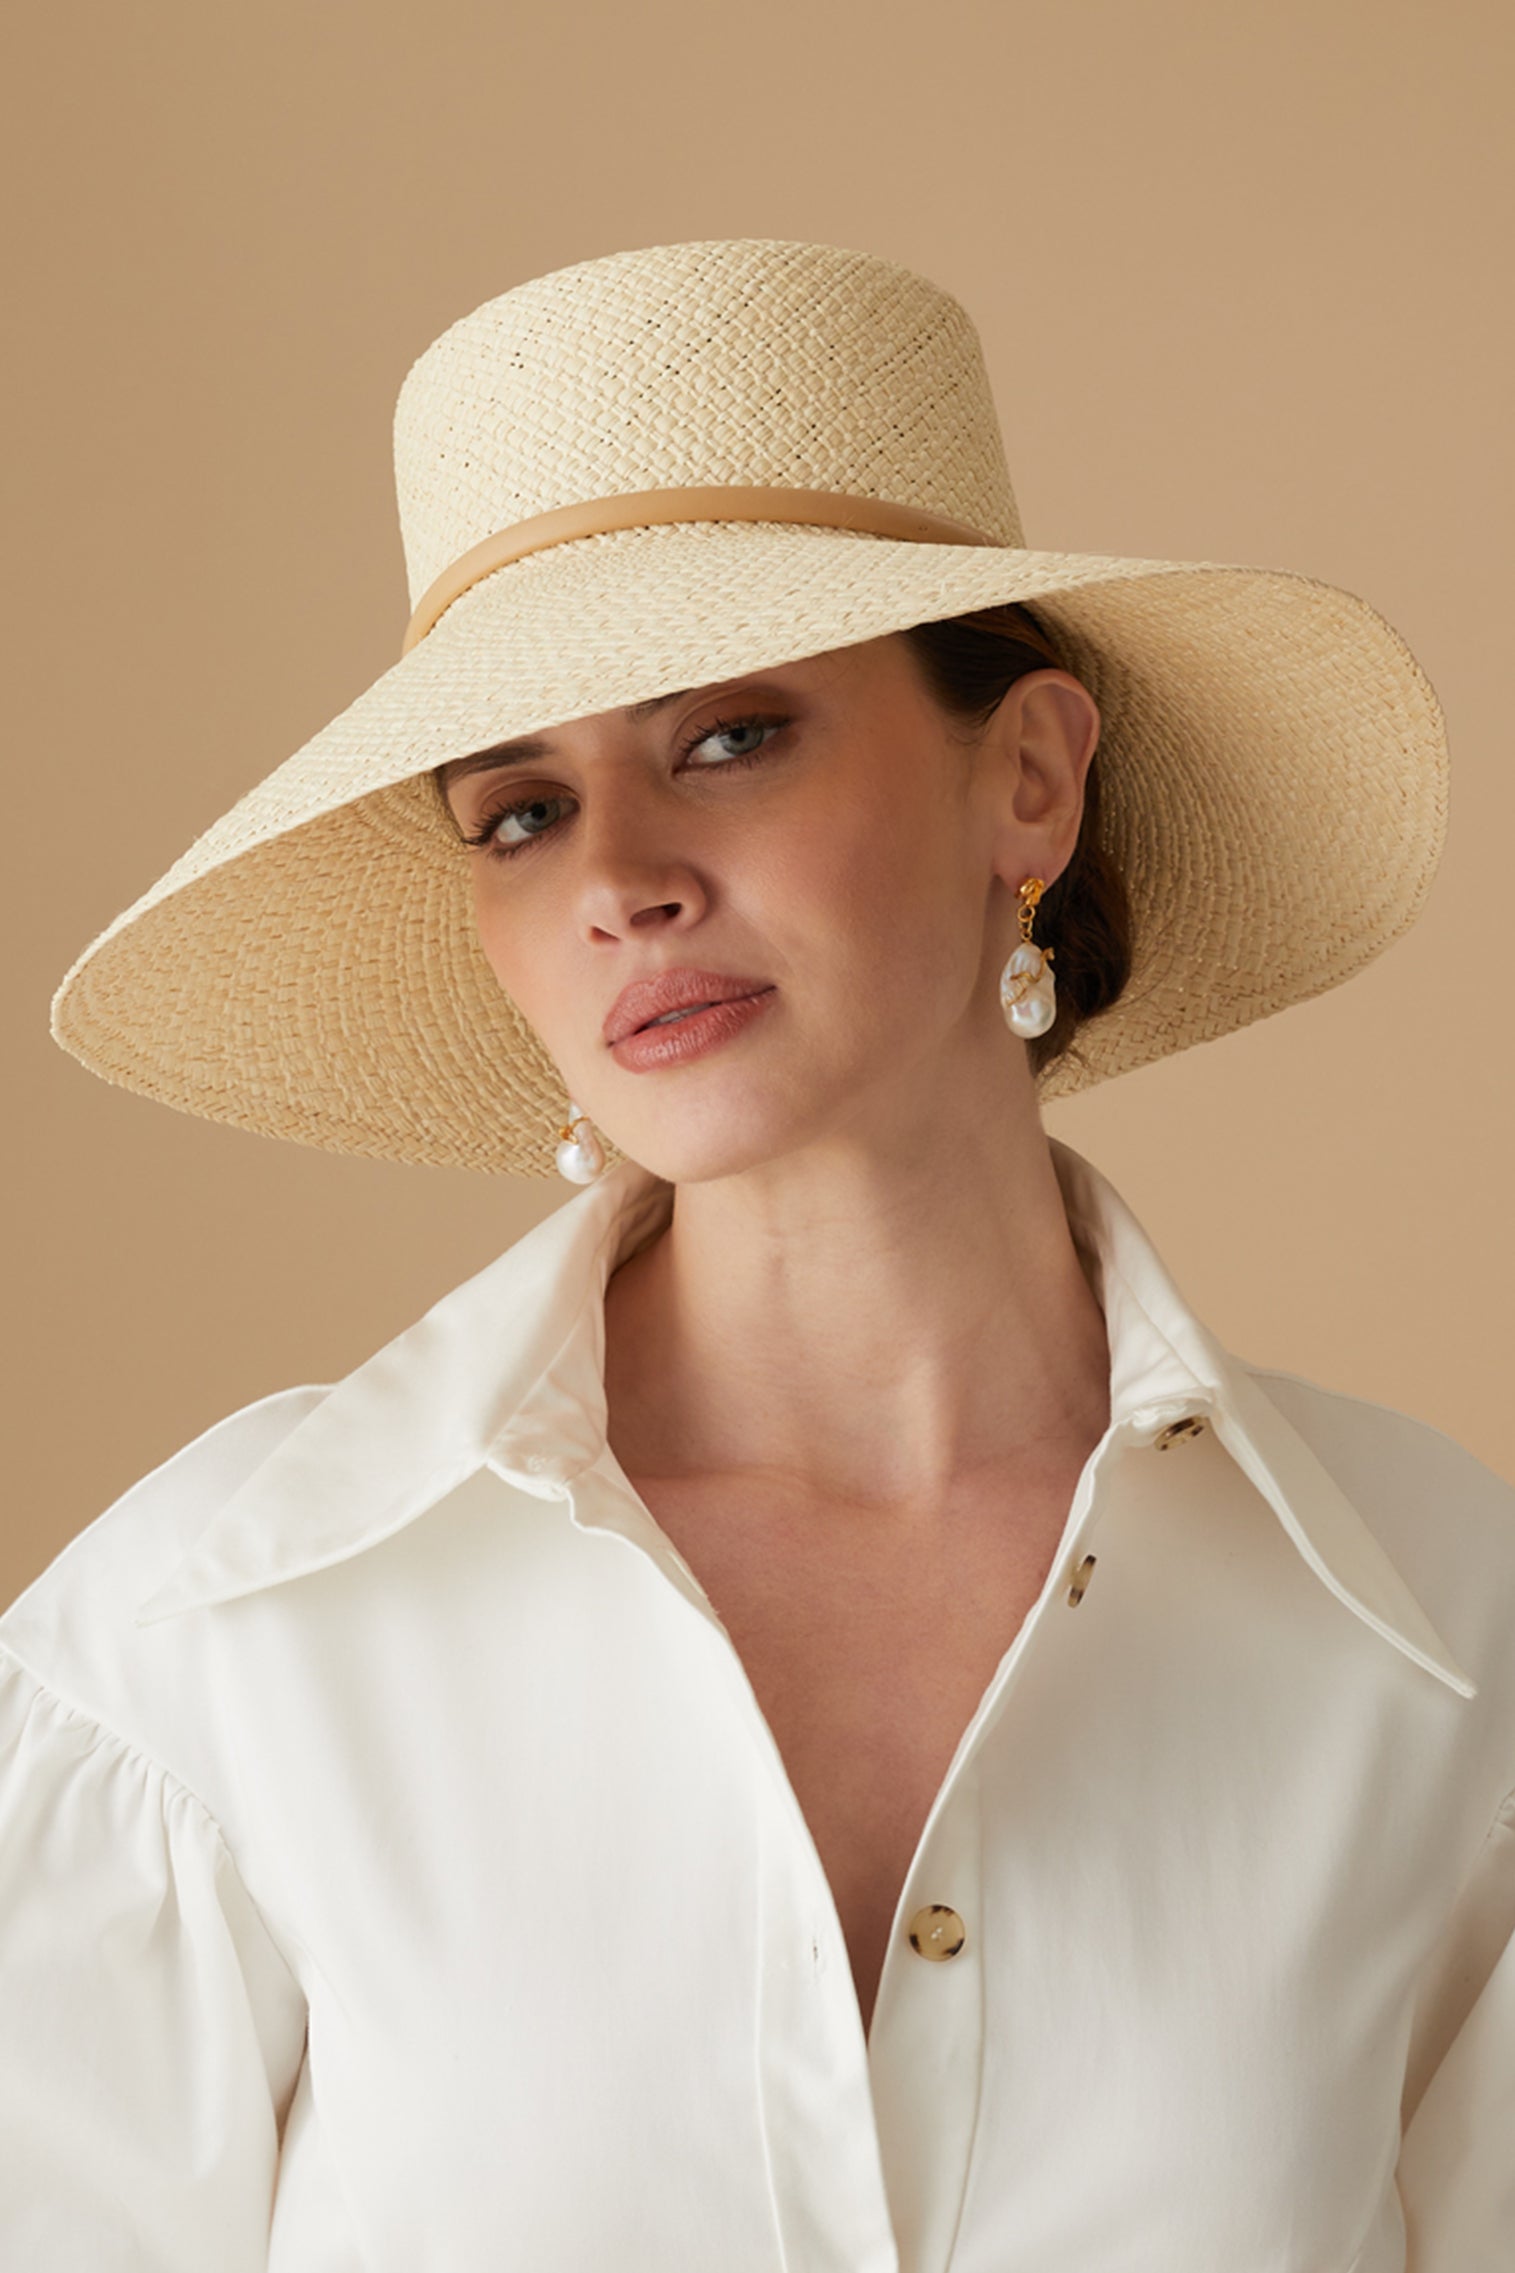 Women's Hats - Elegant Hat Styles for Women - Lock & Co.